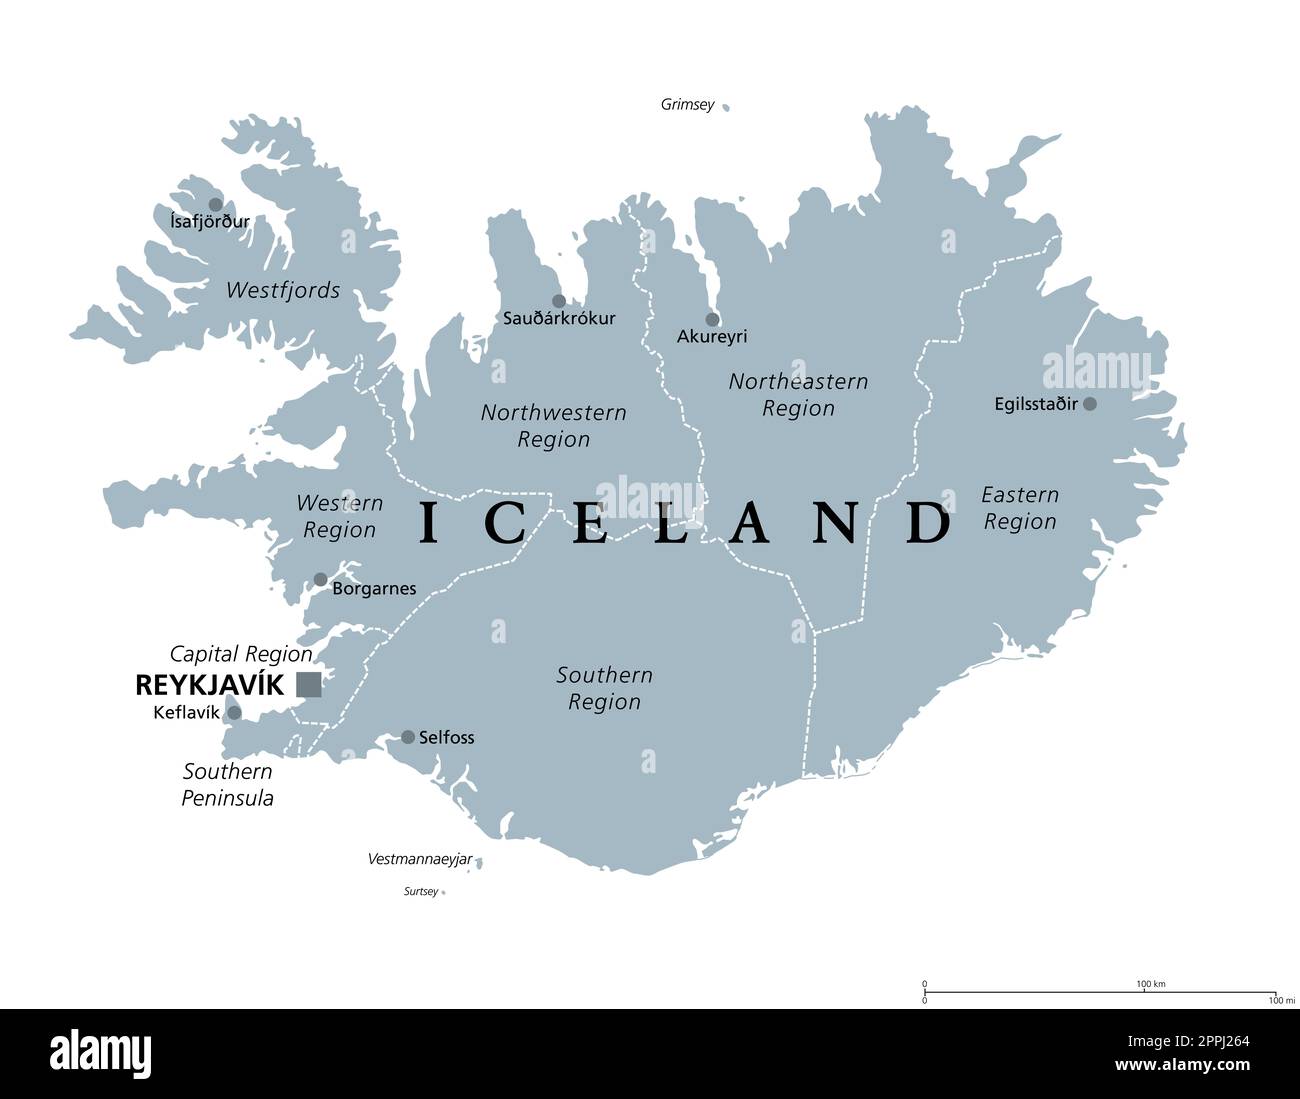 Régions de l'Islande, carte politique grise, avec la capitale Reykjavik. Huit régions et leurs sièges, utilisés à des fins statistiques. Pays de l'île nordique. Banque D'Images